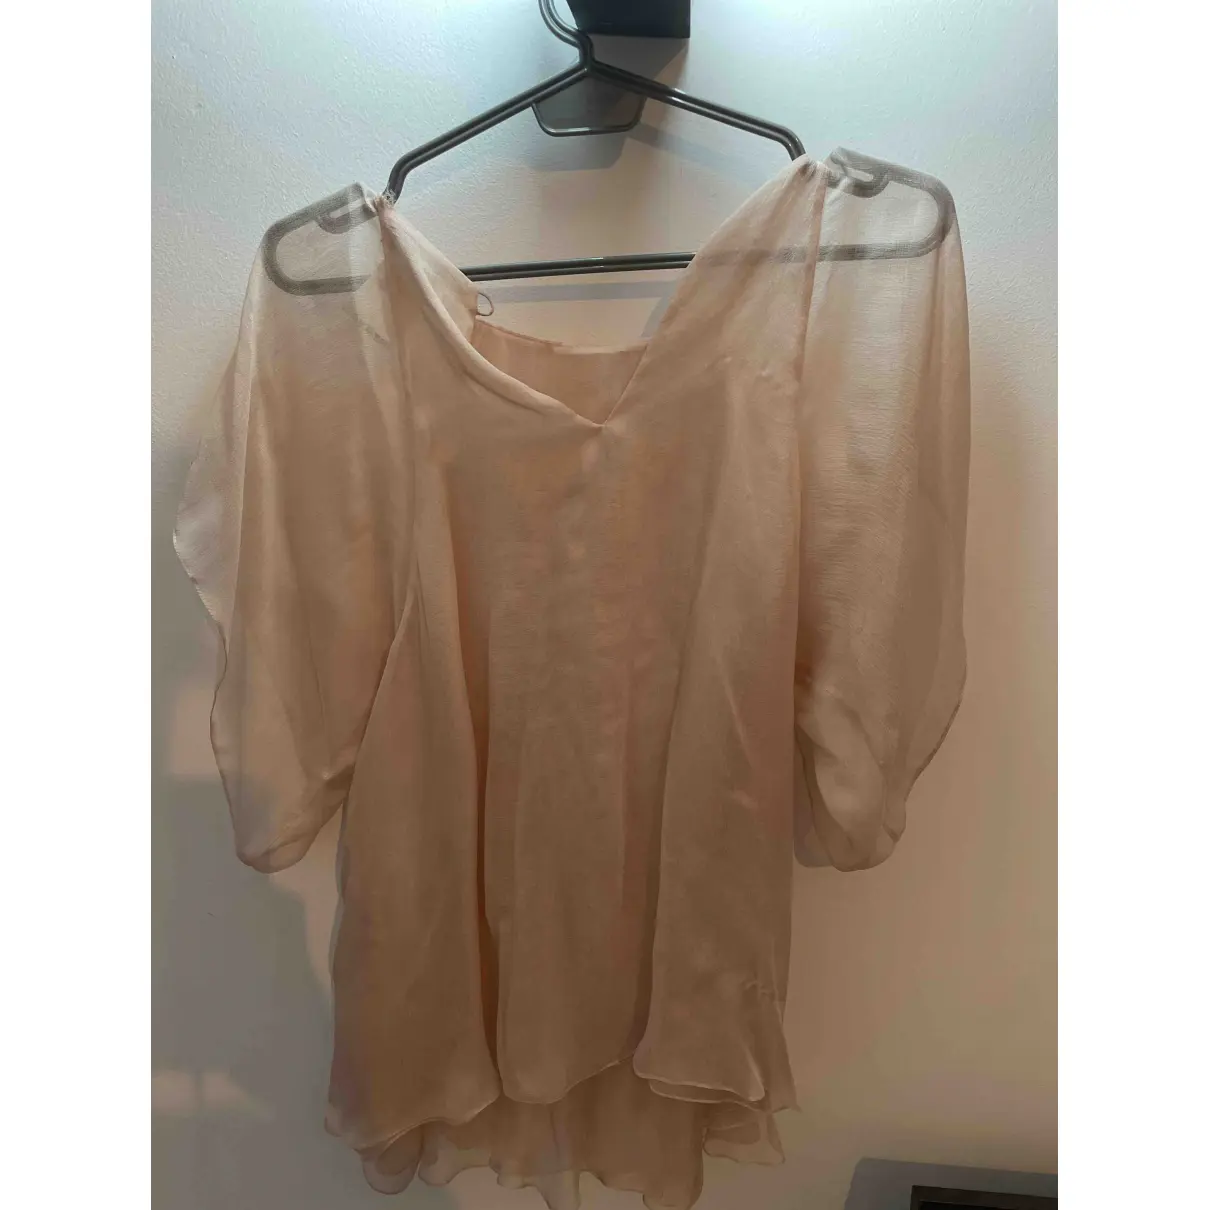 Buy Sonia Rykiel Silk camisole online - Vintage